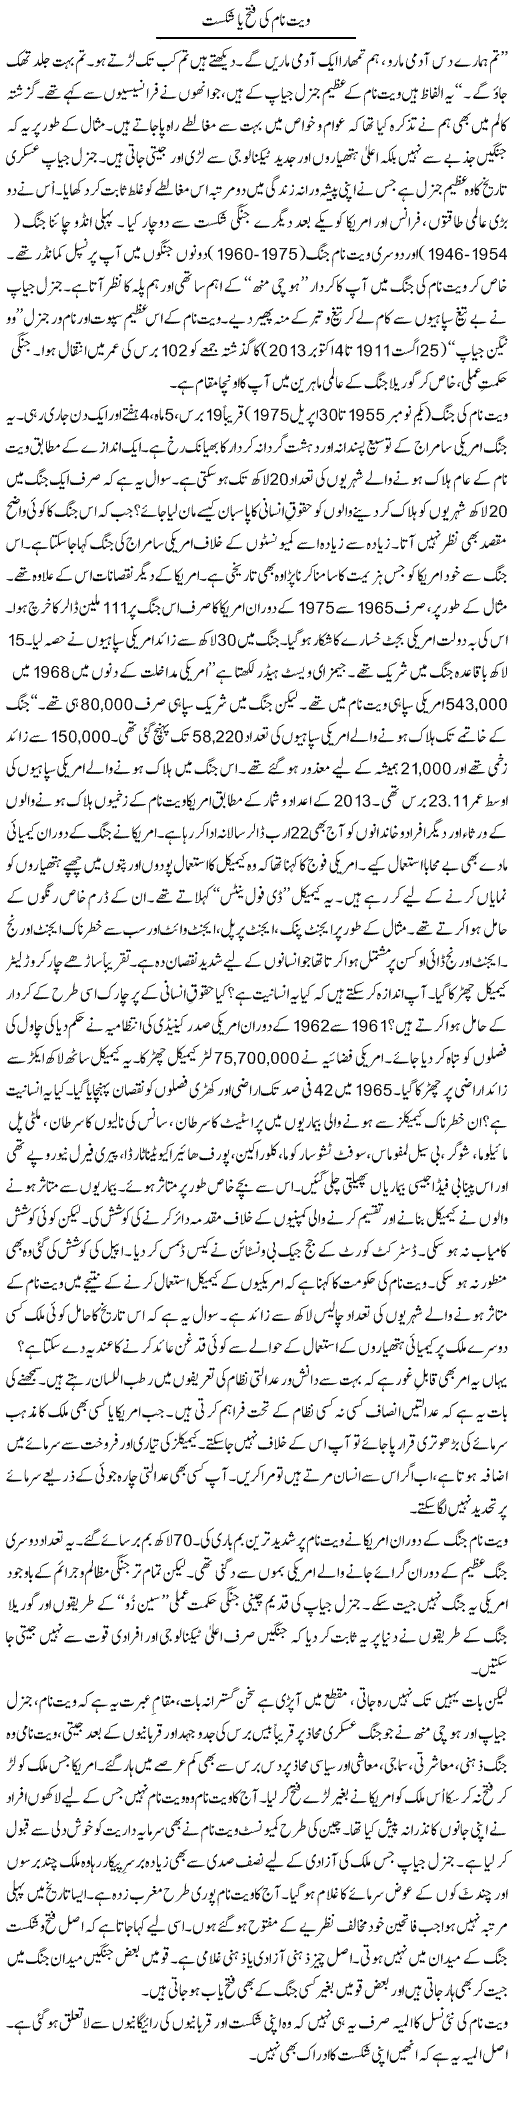 Wet Naam Ki Fateh Ya Shikast | Shaikh Jaber | Daily Urdu Columns